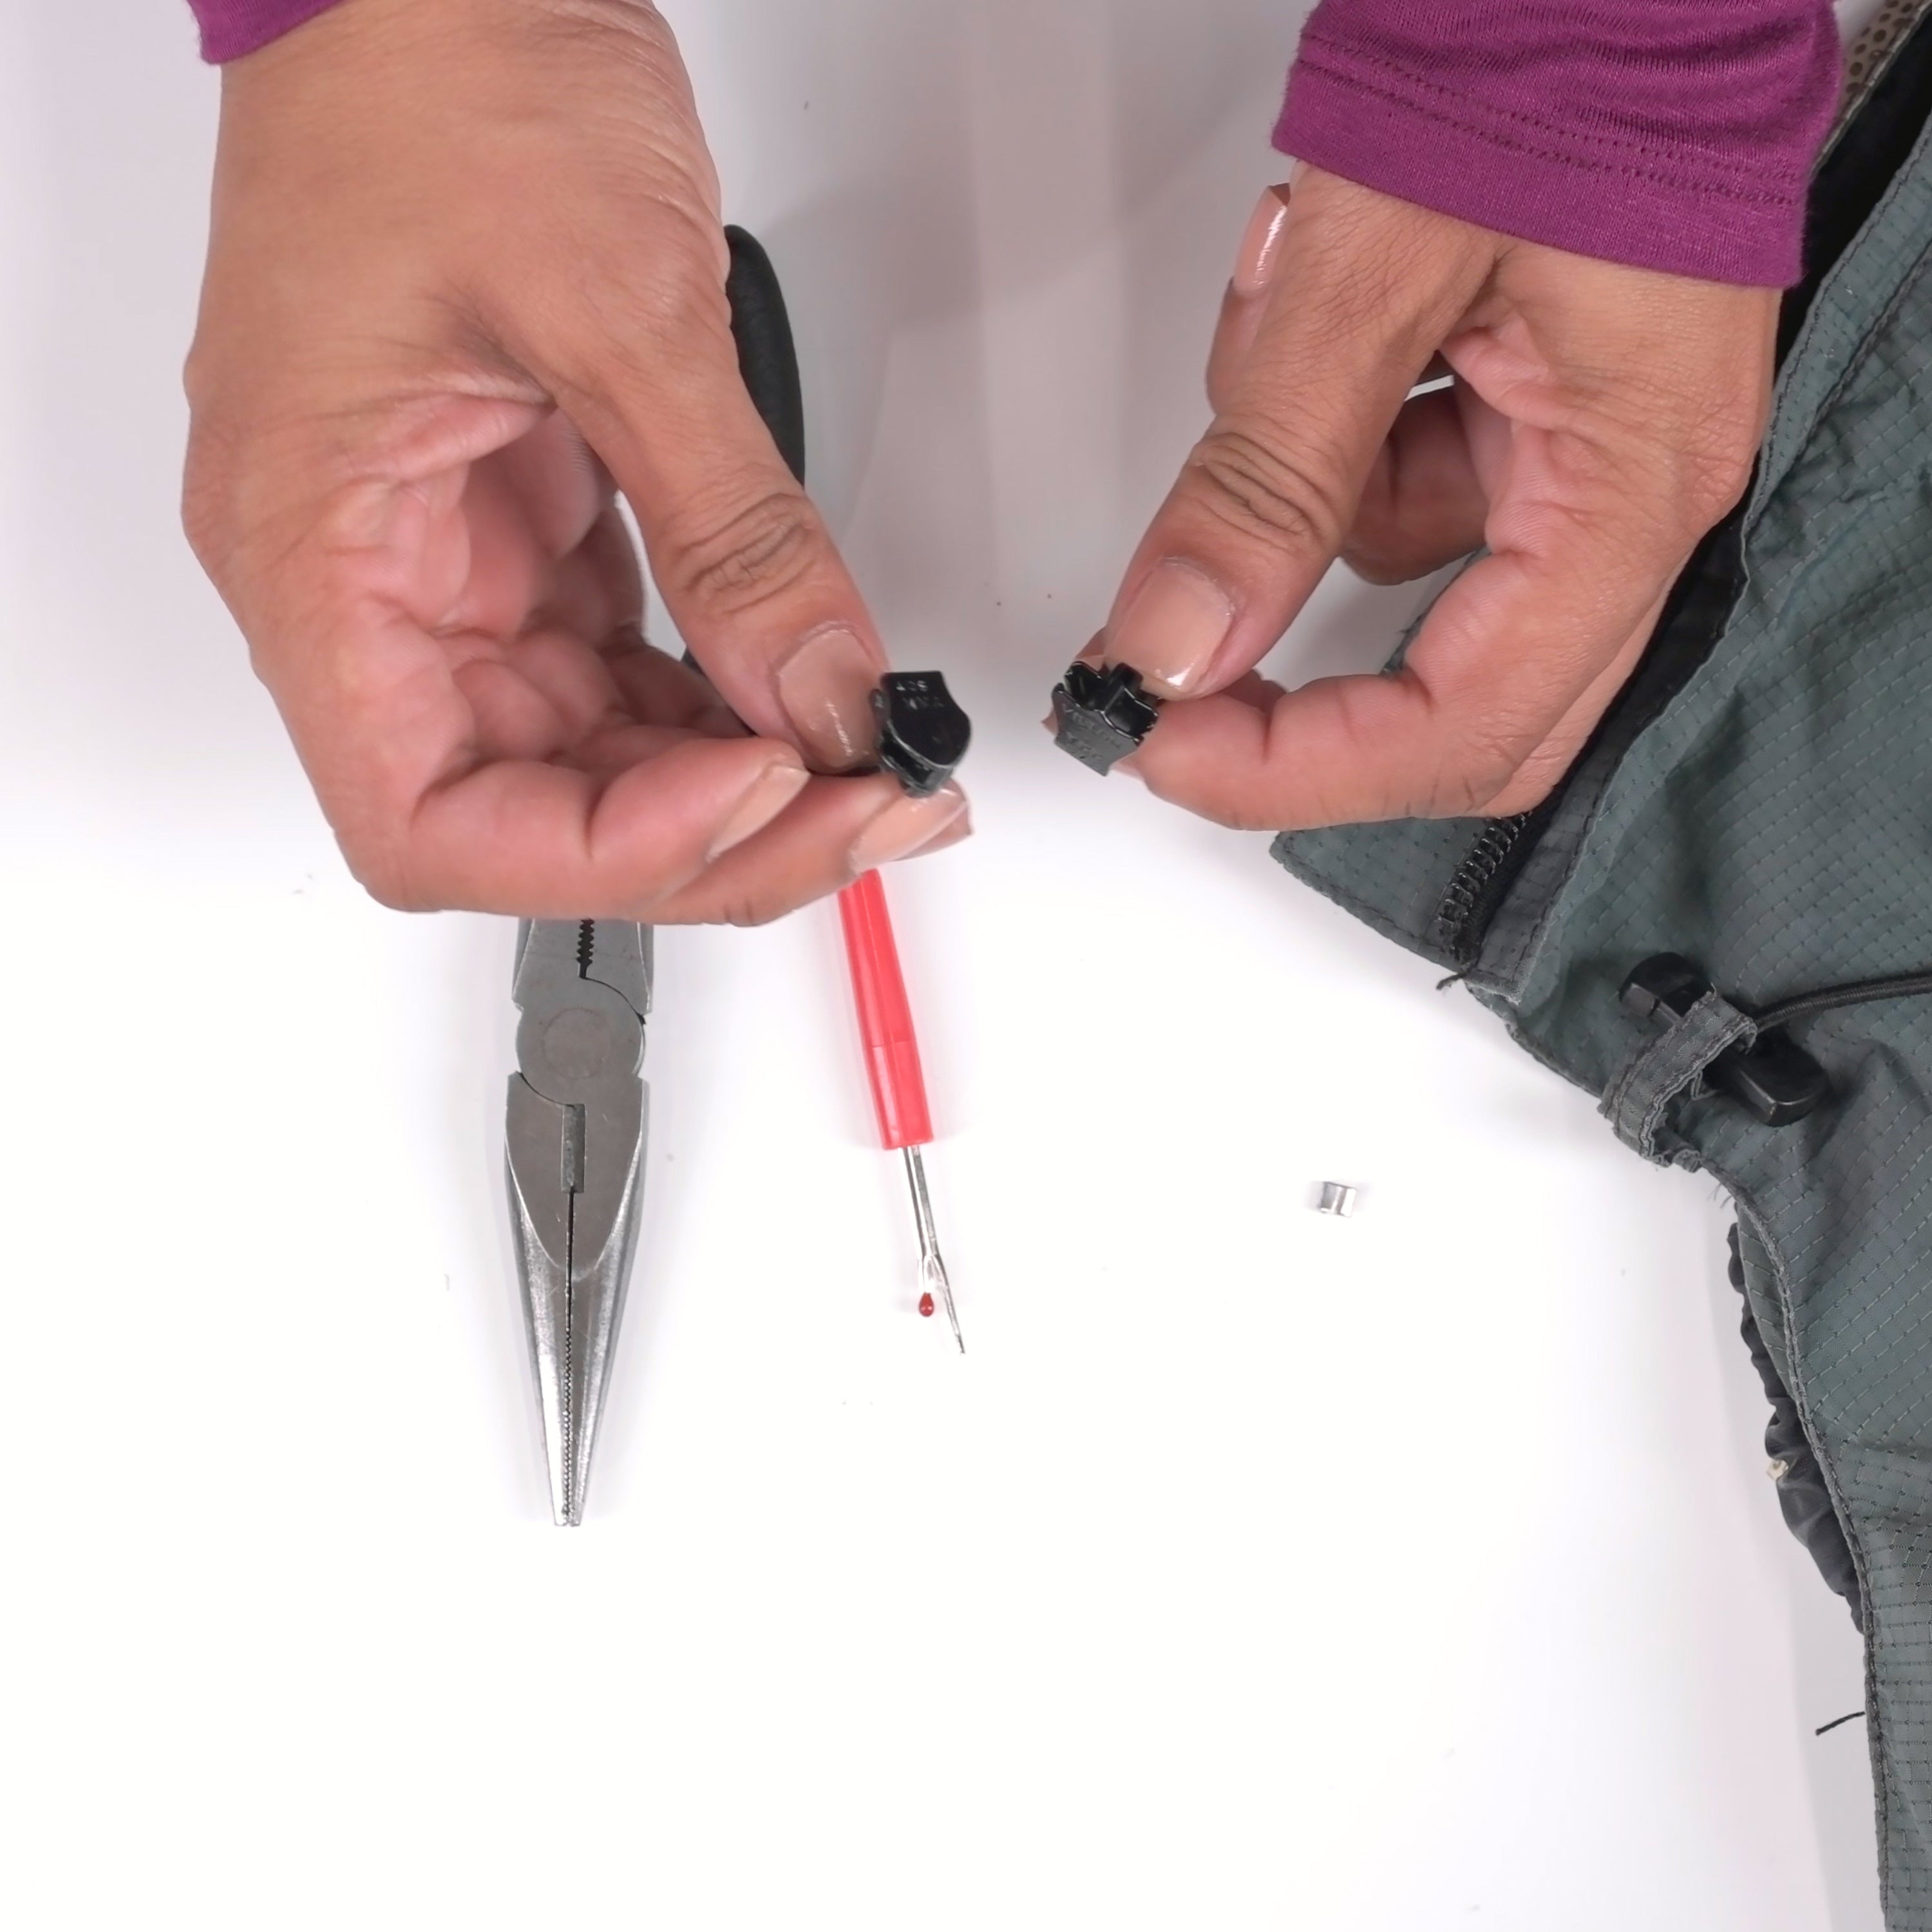 Handy Zipper Repair Kits : zipper repair